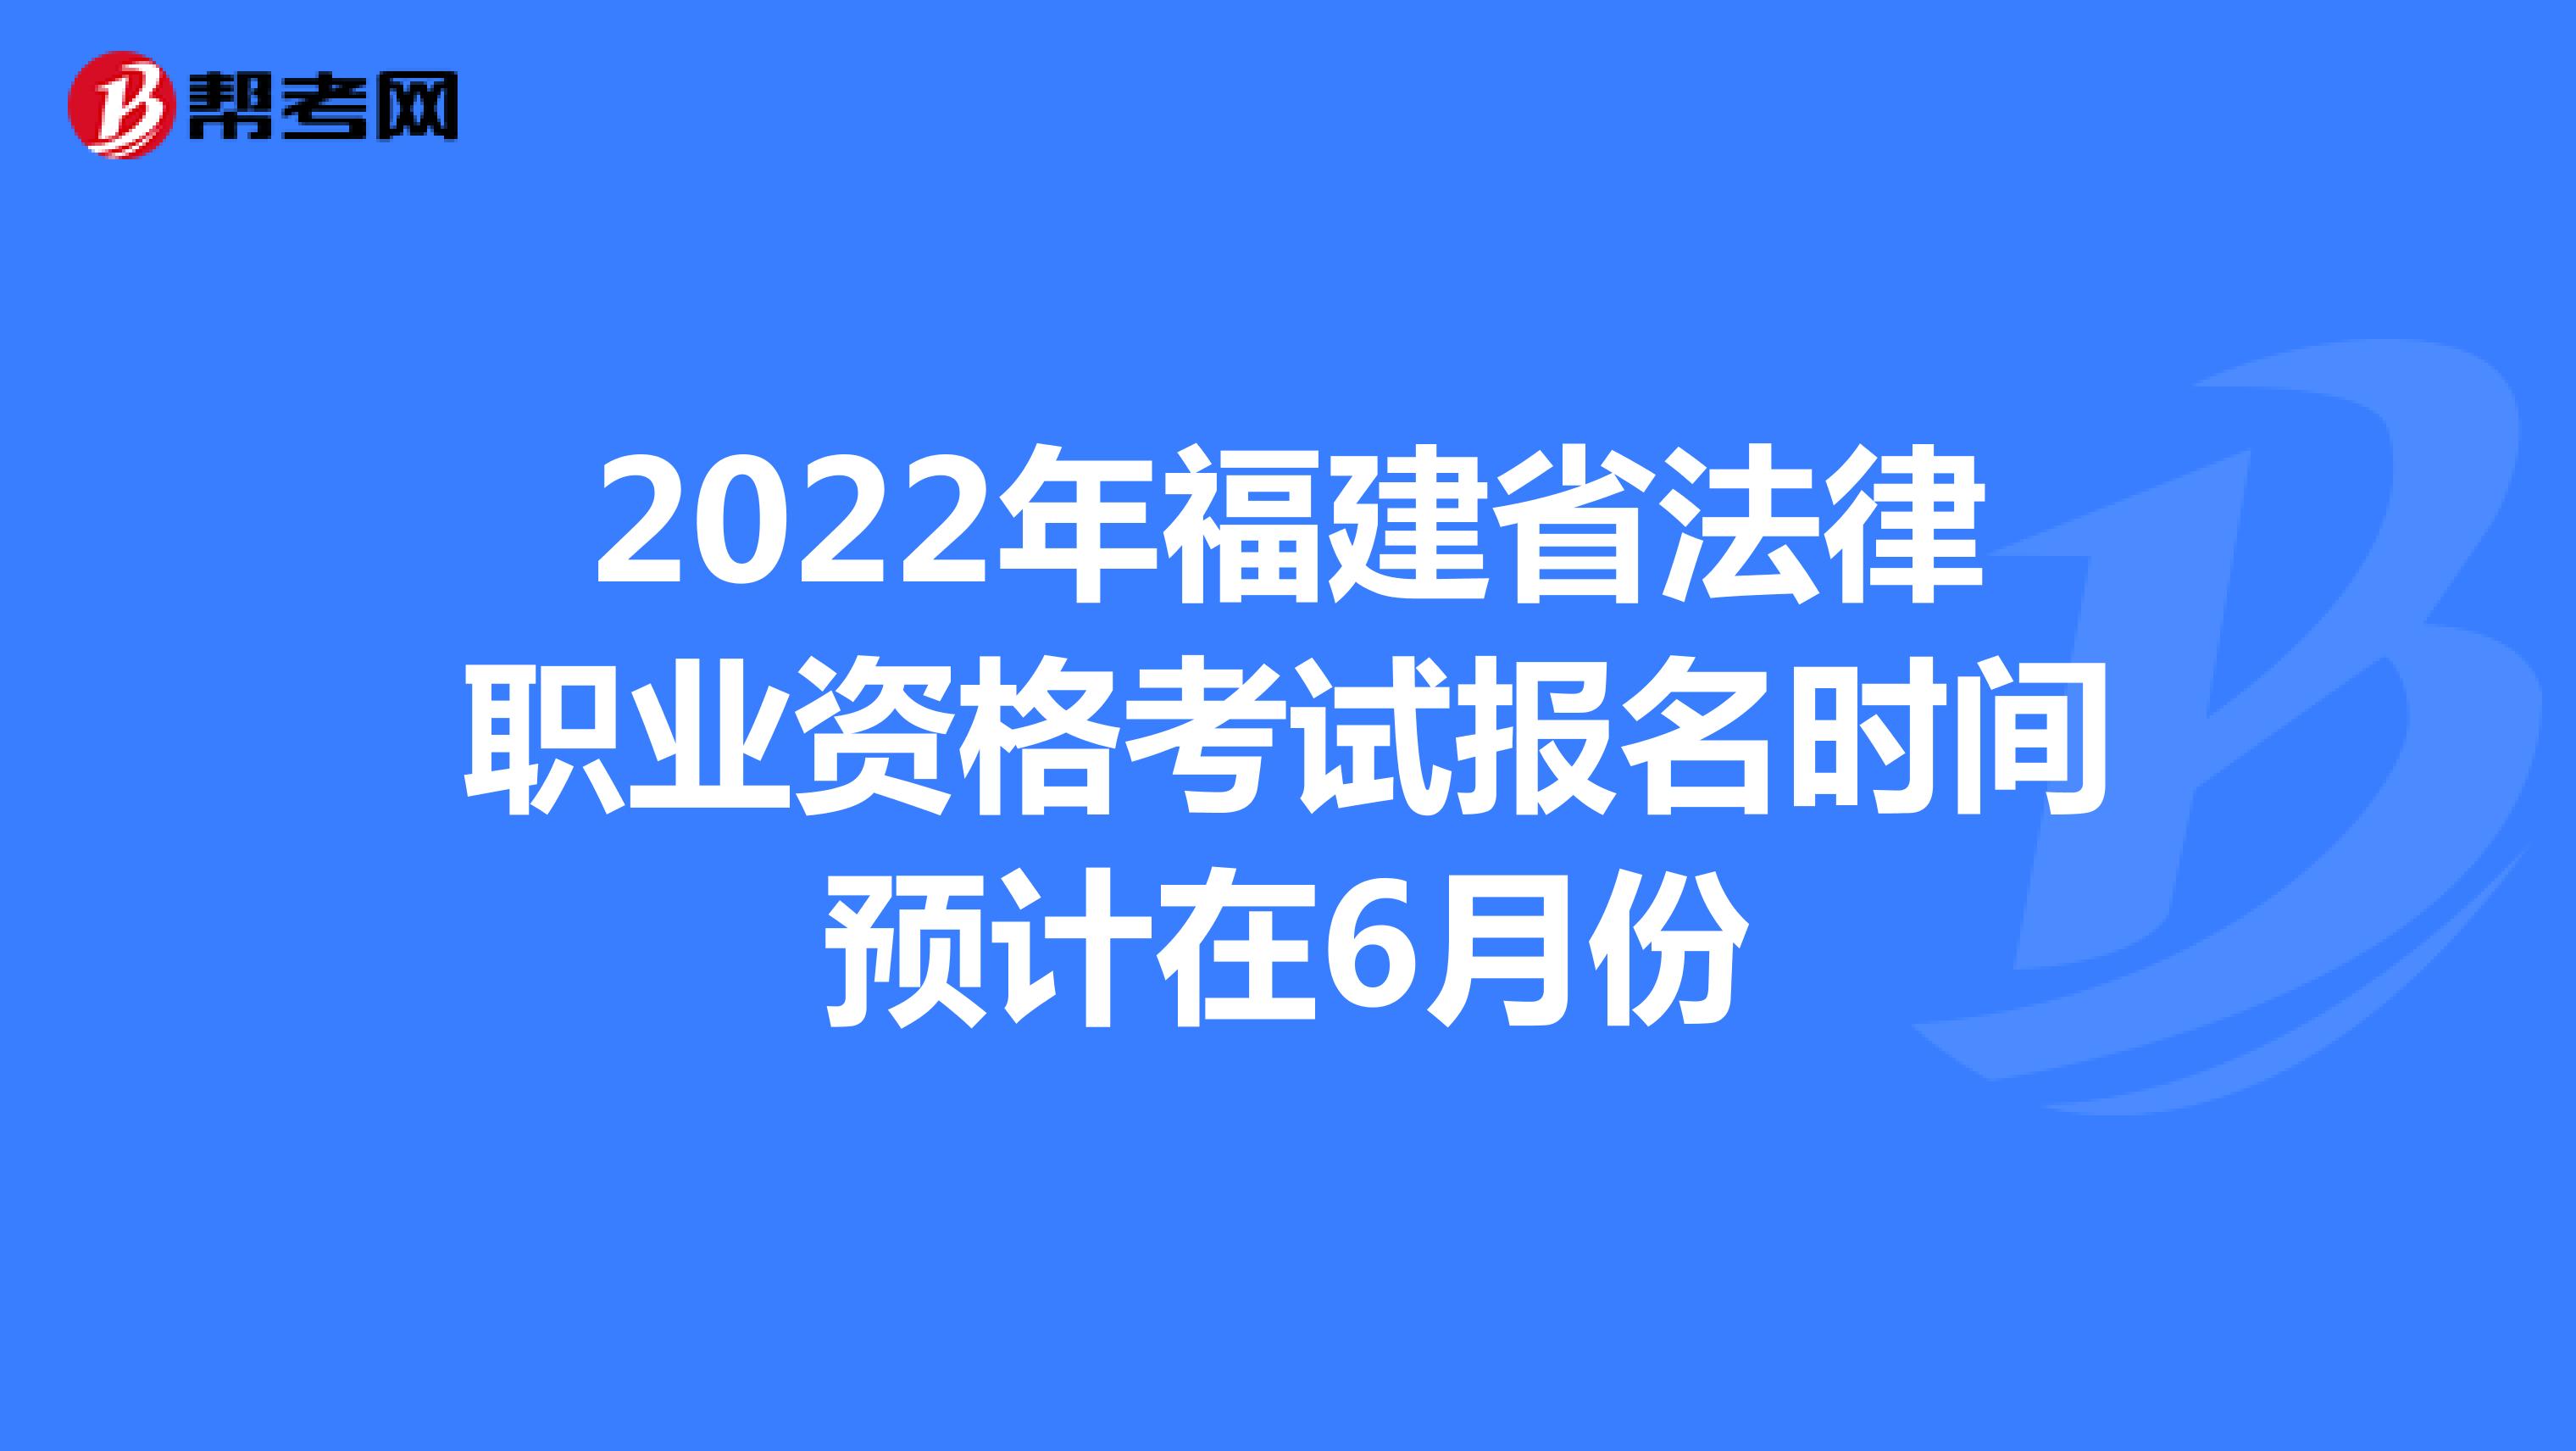 2022年福建省法律职业资格考试报名时间预计在6月份